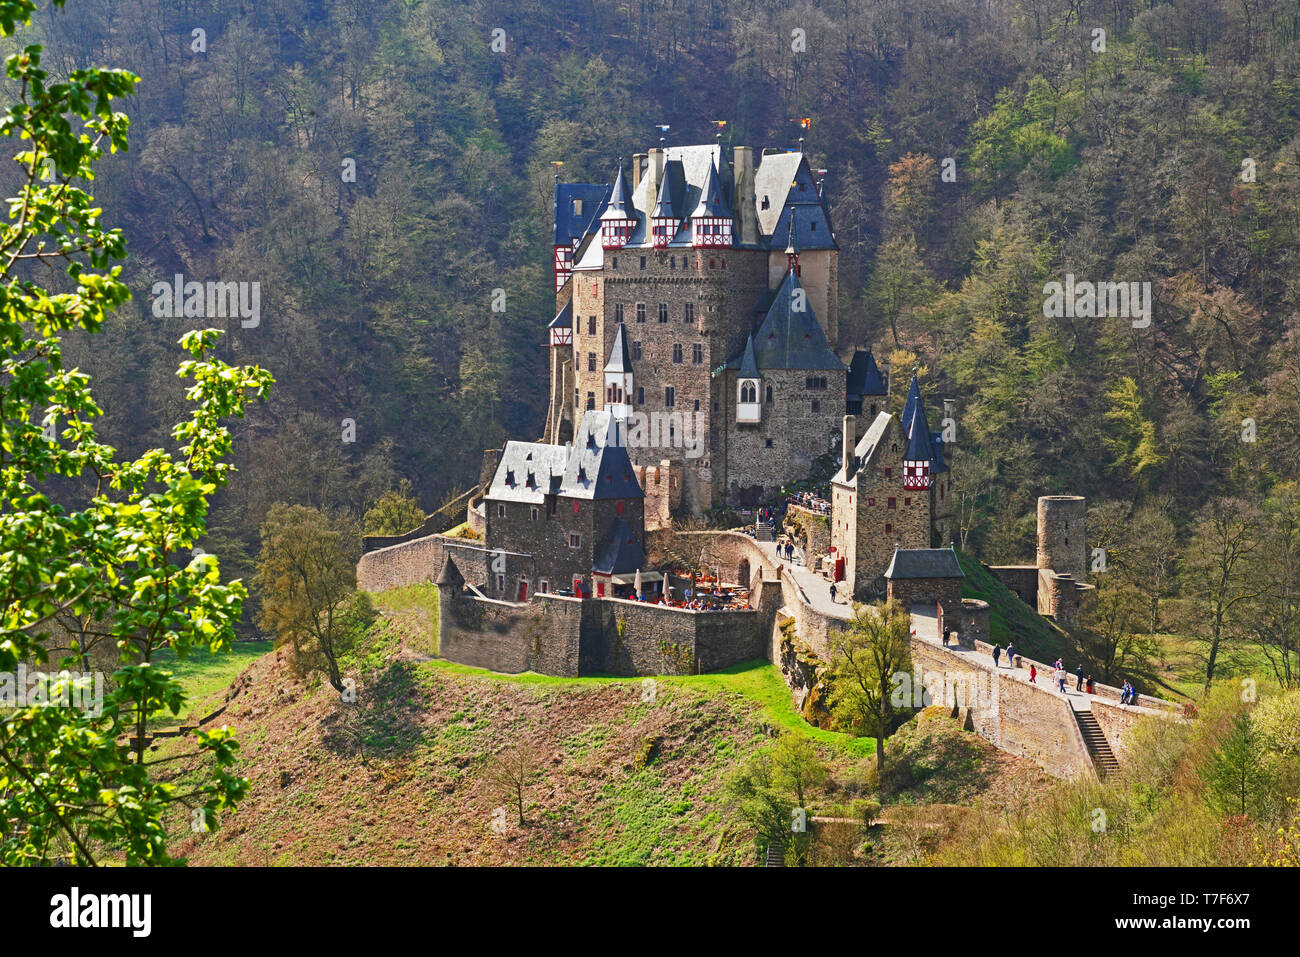 Burg Eltz castello nei pressi del fiume Moselle, Germania Foto Stock